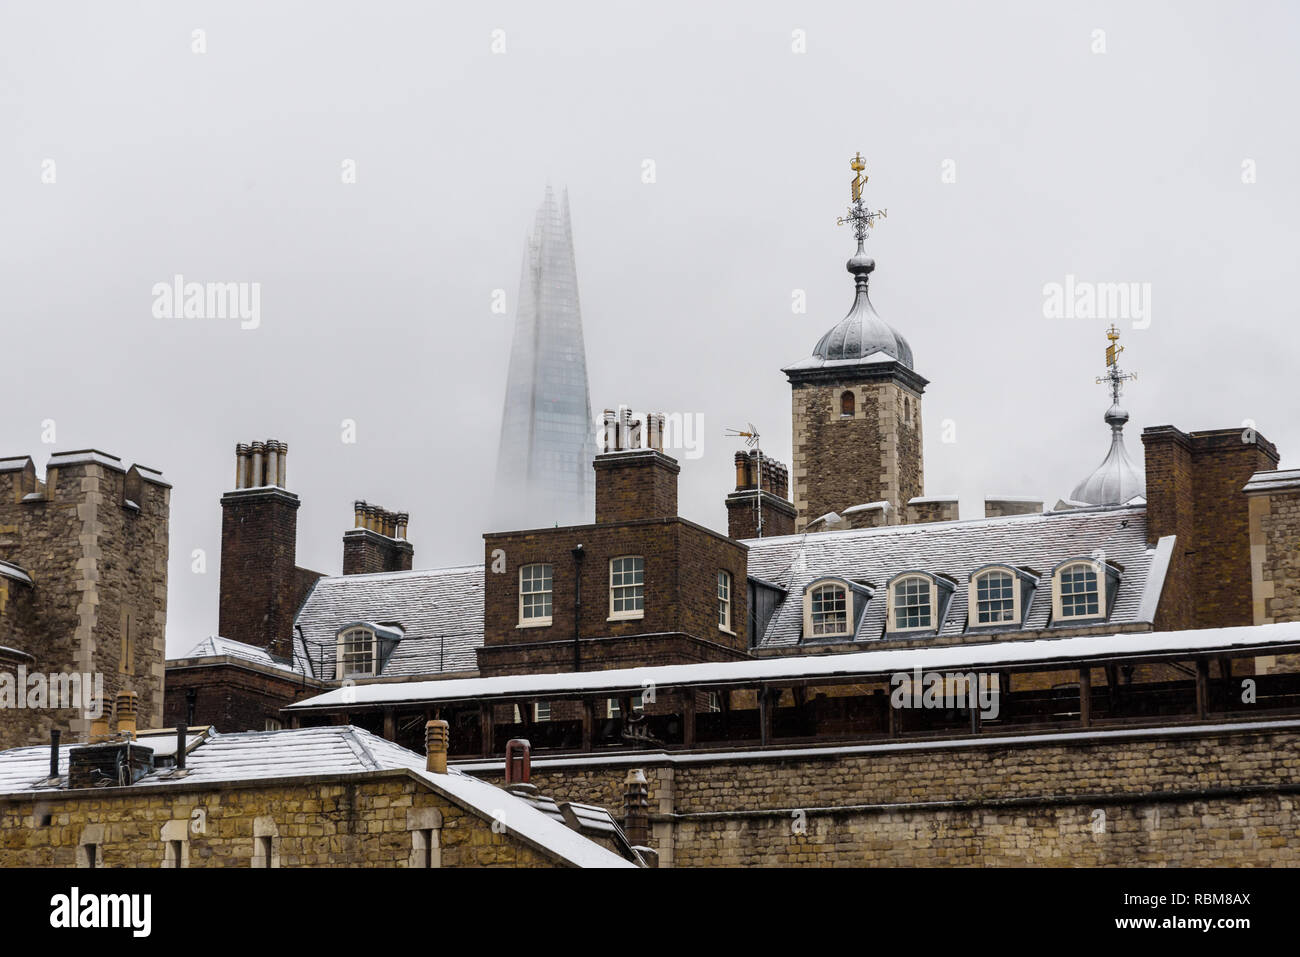 Nieve en Londres. Los tejados de la Torre de Londres cubierto de nieve fresca. En el fondo el Shard, el rascacielos más alto de Europa. Foto de stock